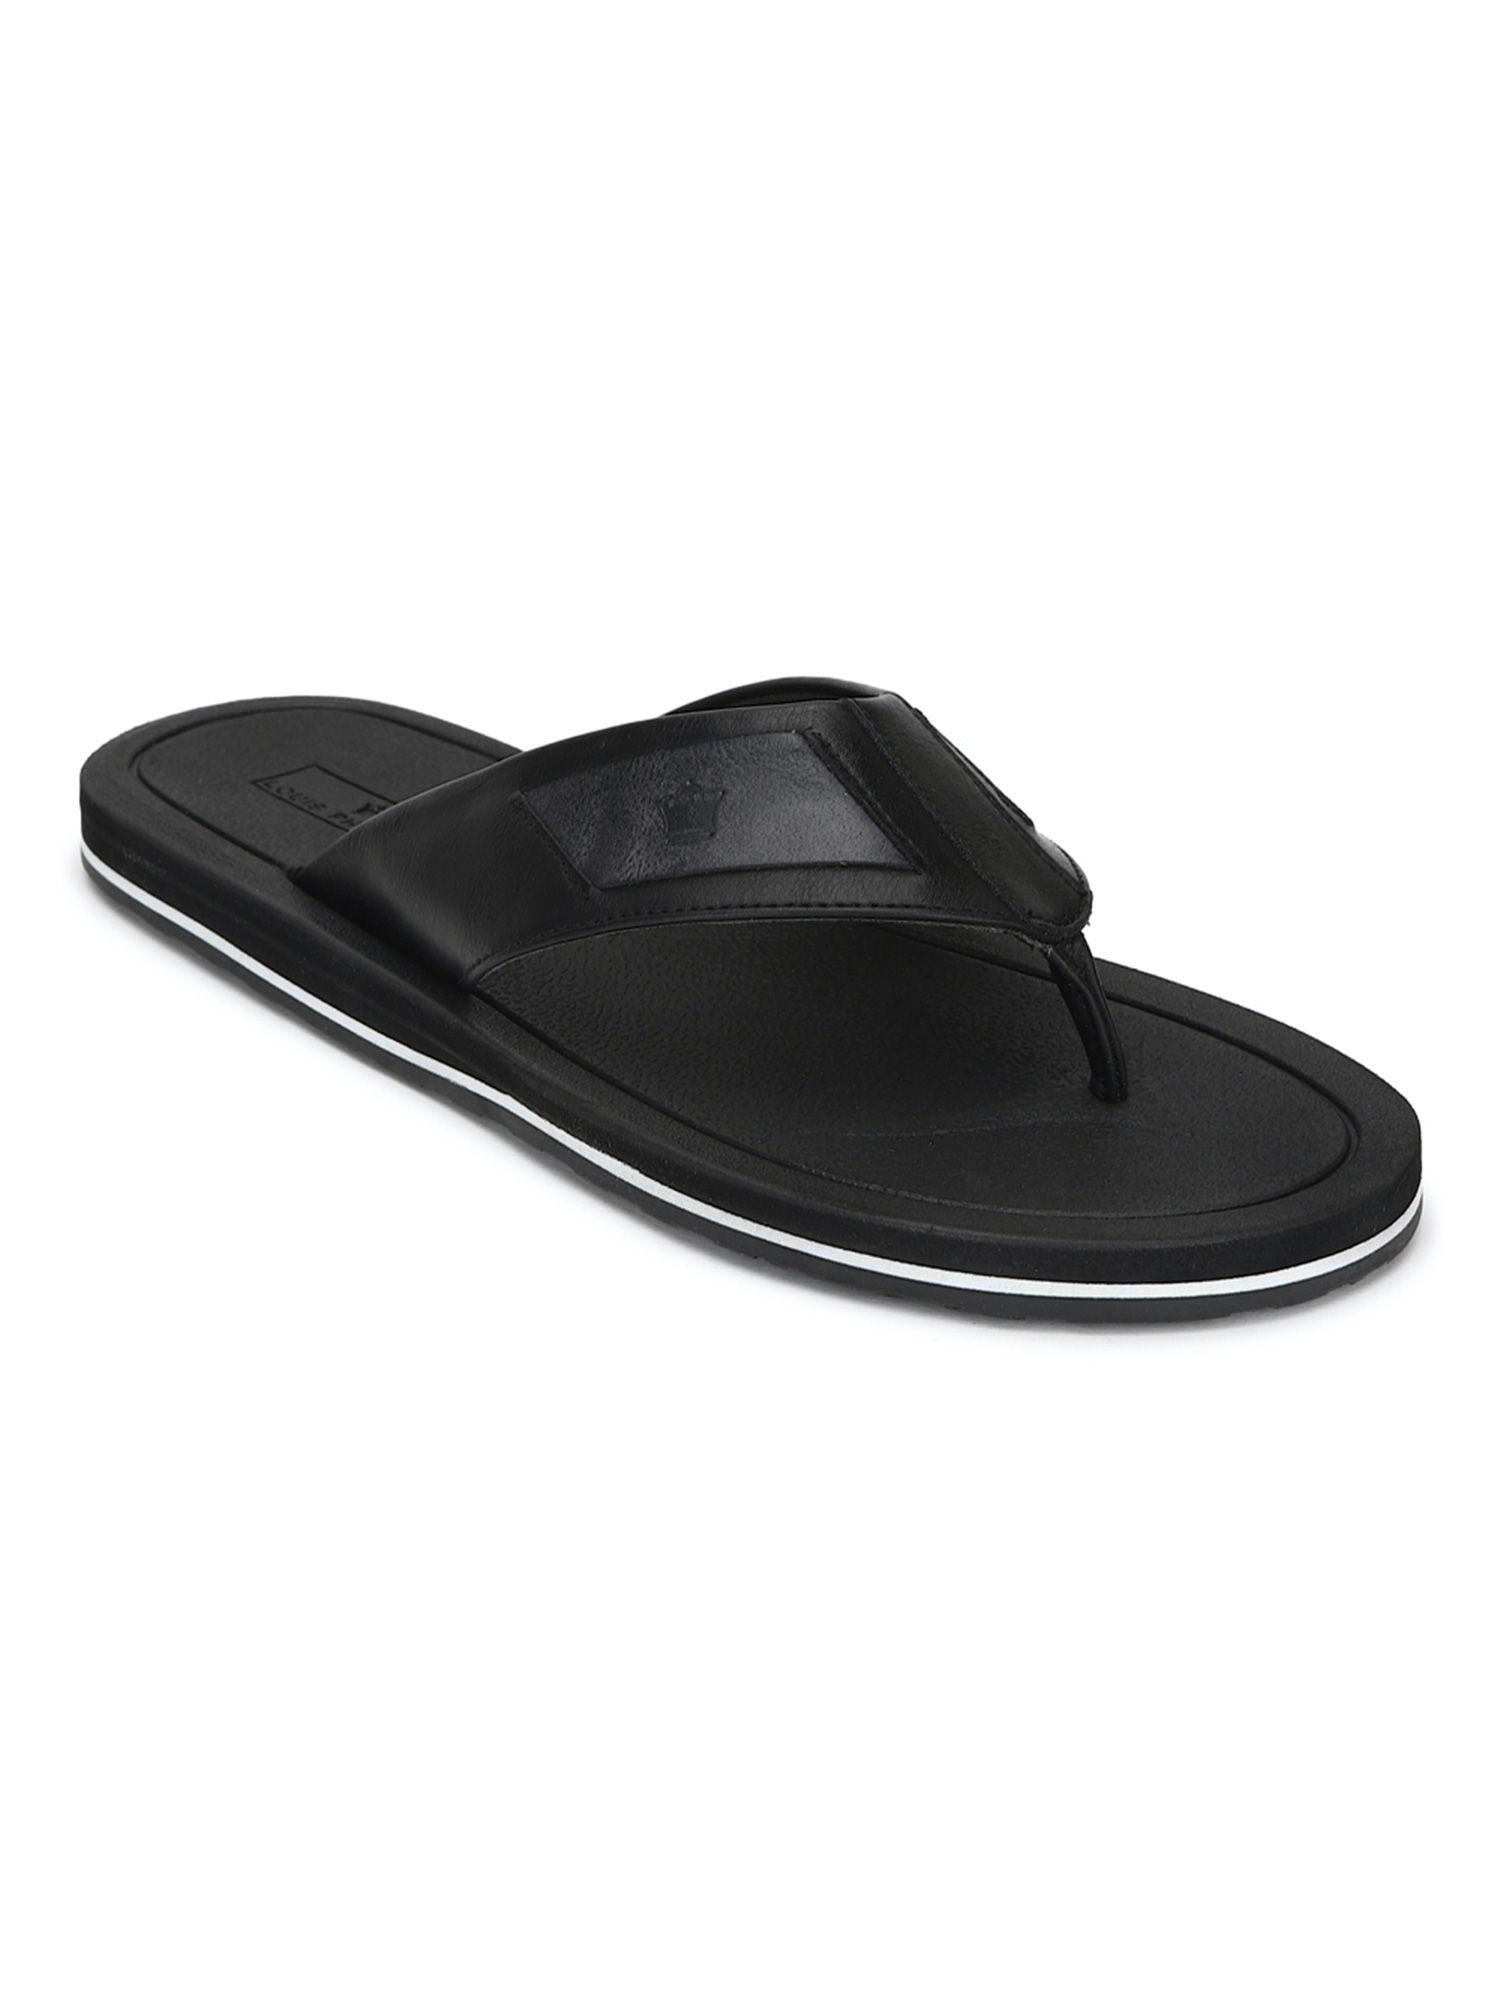 solid black flip flops